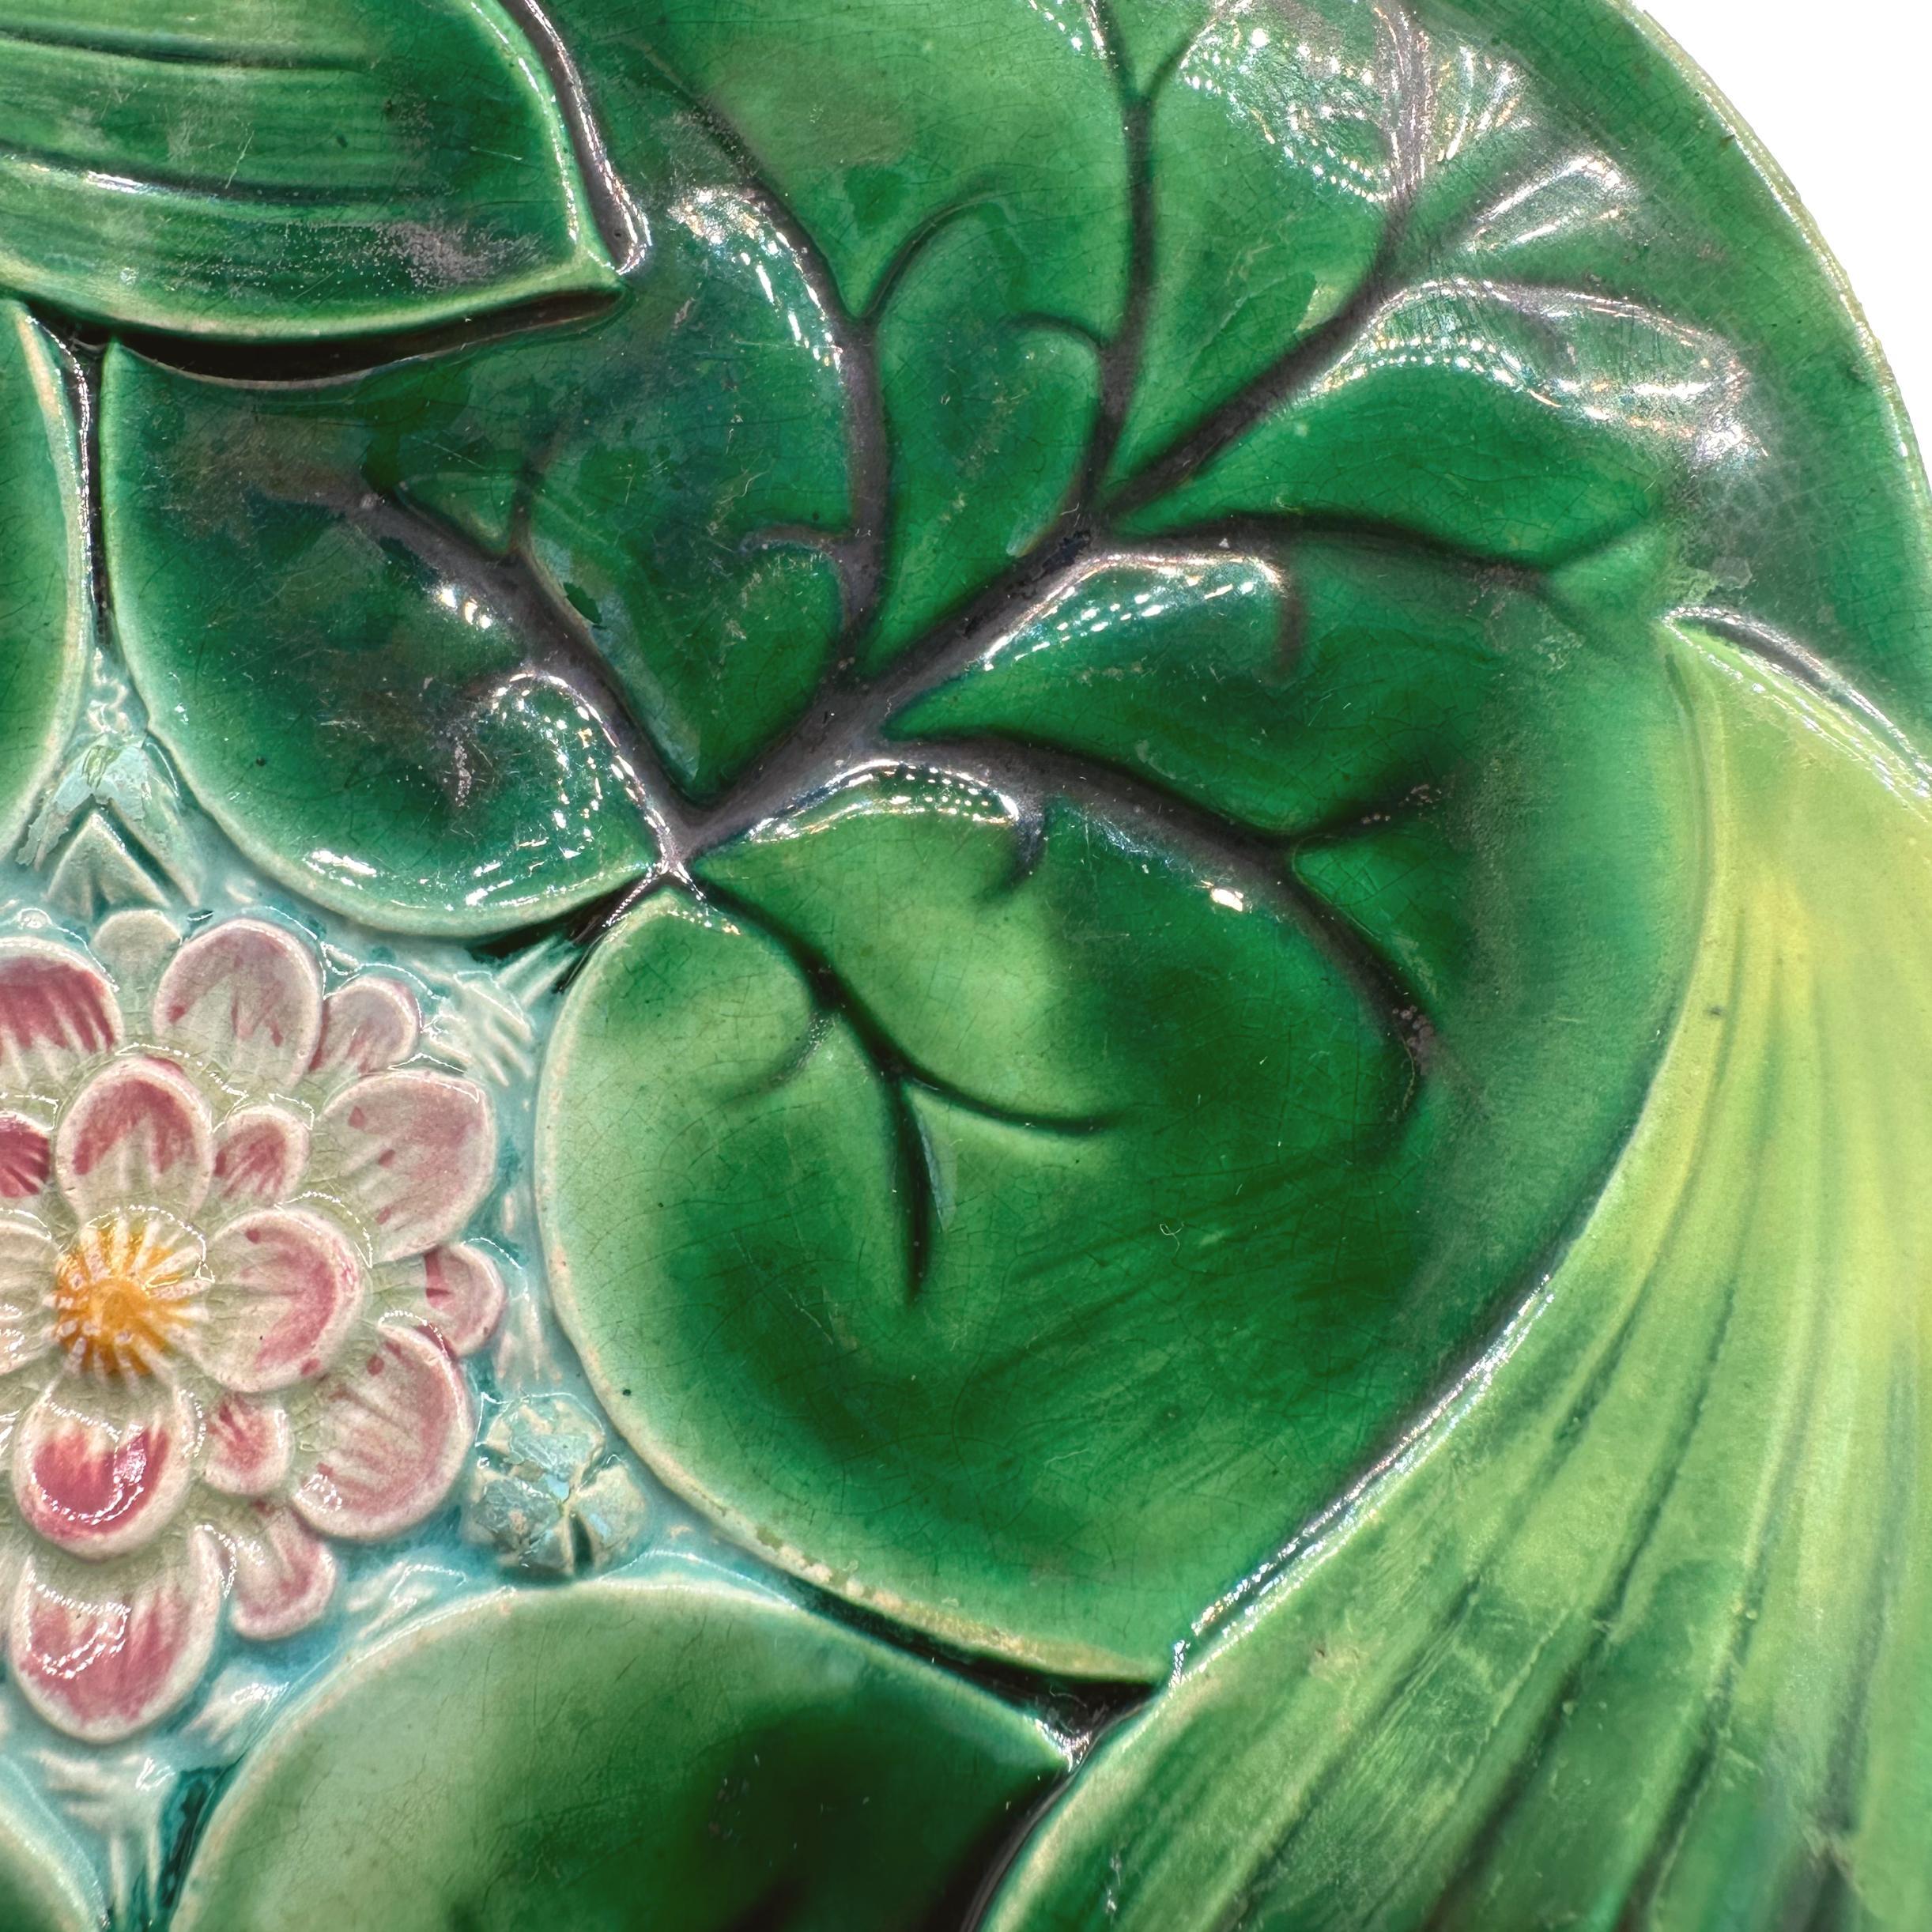 Assiette à lotus en majolique de George Jones, moulée de façon naturaliste comme des nénuphars et des feuilles de lotus se chevauchant, avec une fleur de lotus centrale rose et jaune moulée en relief sur de l'eau émaillée turquoise, le revers